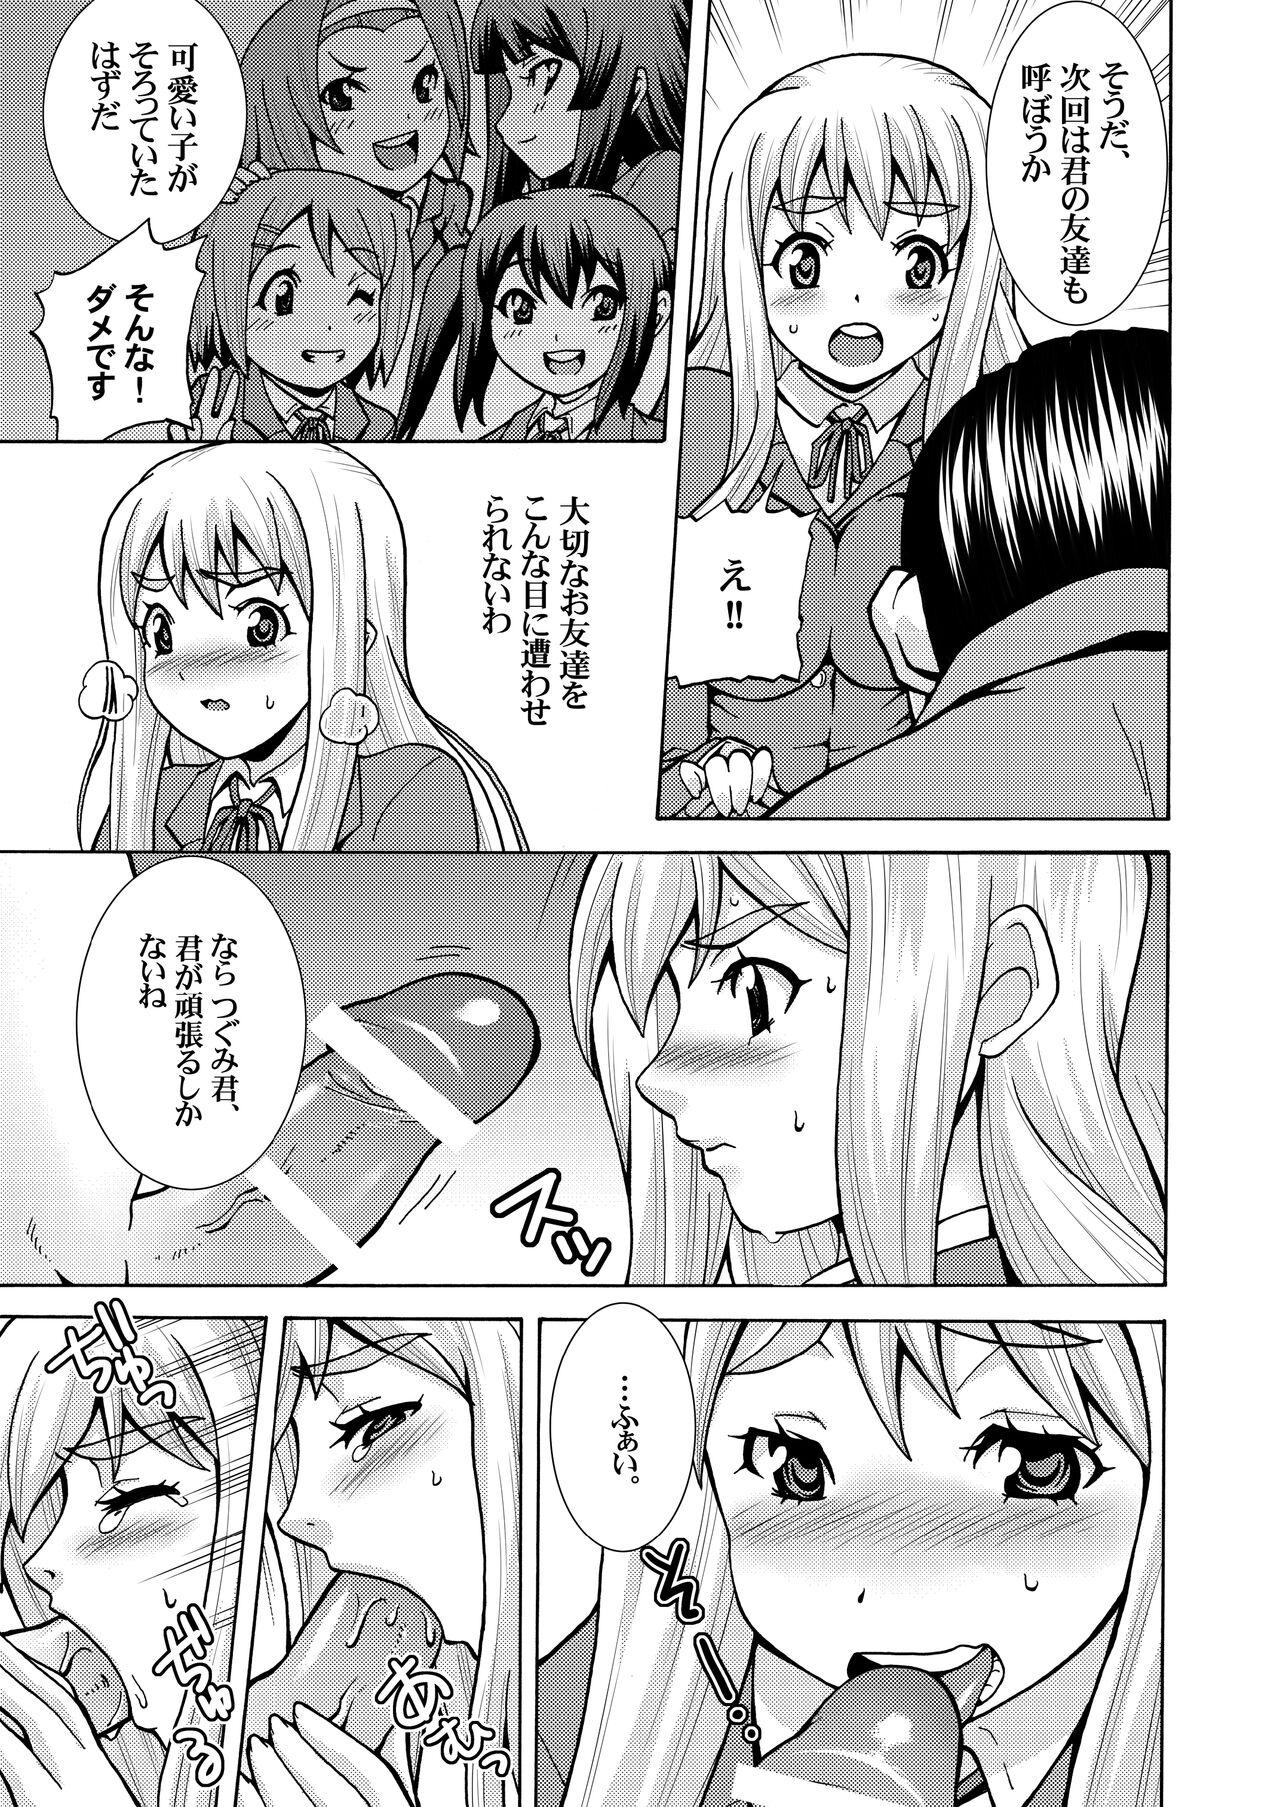 Foursome Kimi no Shiranai - Tsumugi Snake - K on Amadora - Page 7